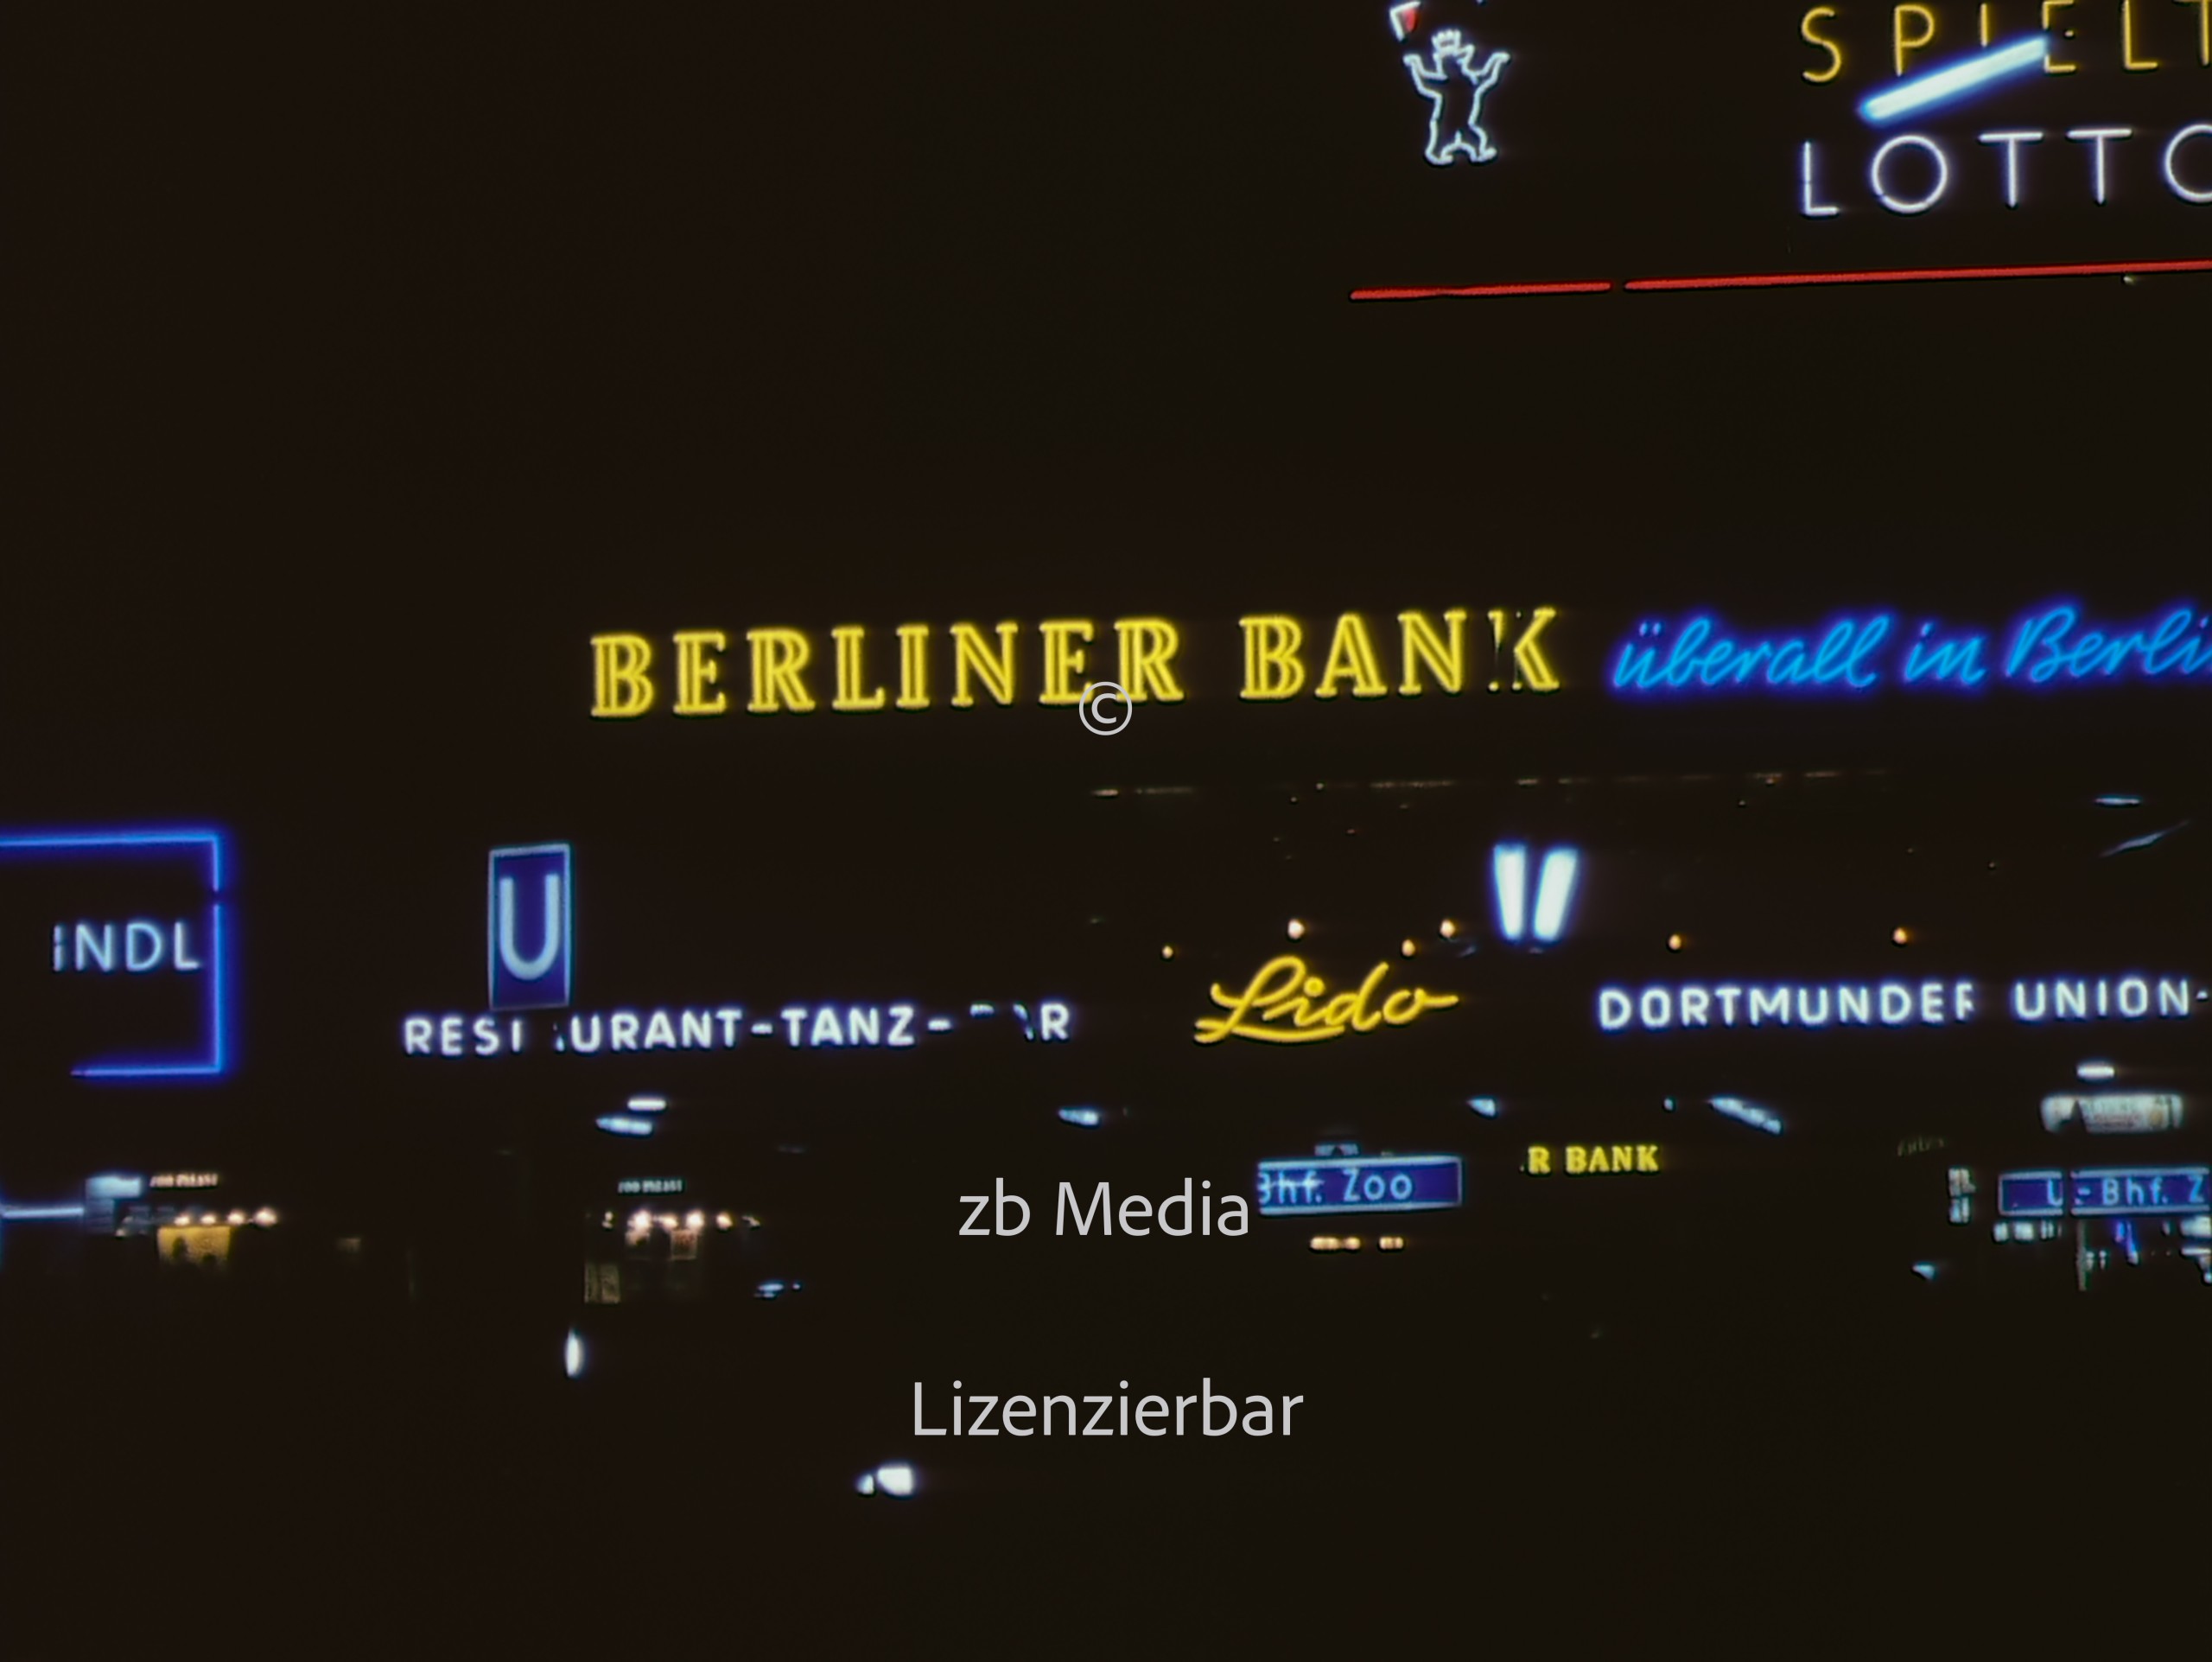 Nacht am Kurfürstendamm in Berlin 1961